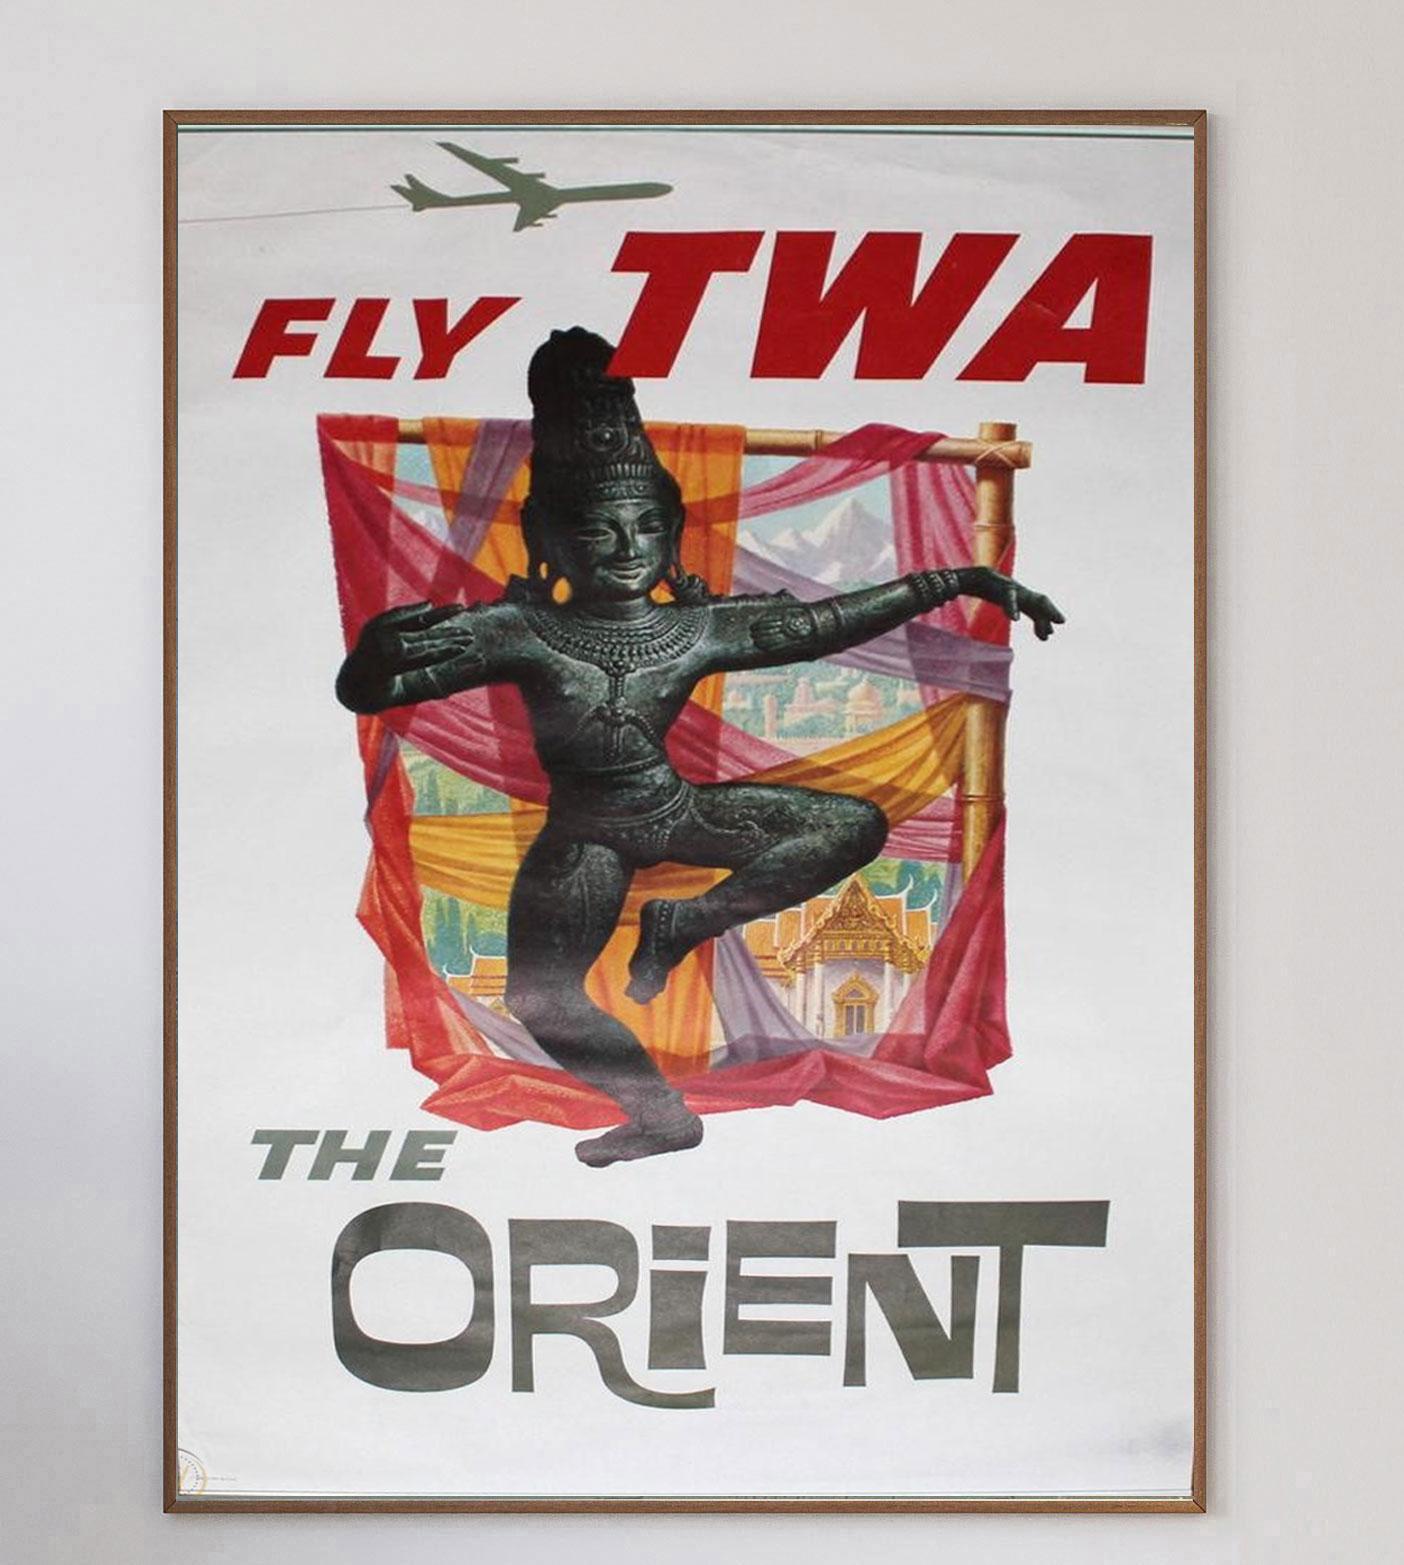 Cette affiche a été créée en 1959 pour la compagnie Trans World Airlines d'Howard Hughes afin de promouvoir ses liaisons avec l'Orient au départ des États-Unis. Illustré par l'influent artiste américain David Klein, ce motif reprend des thèmes